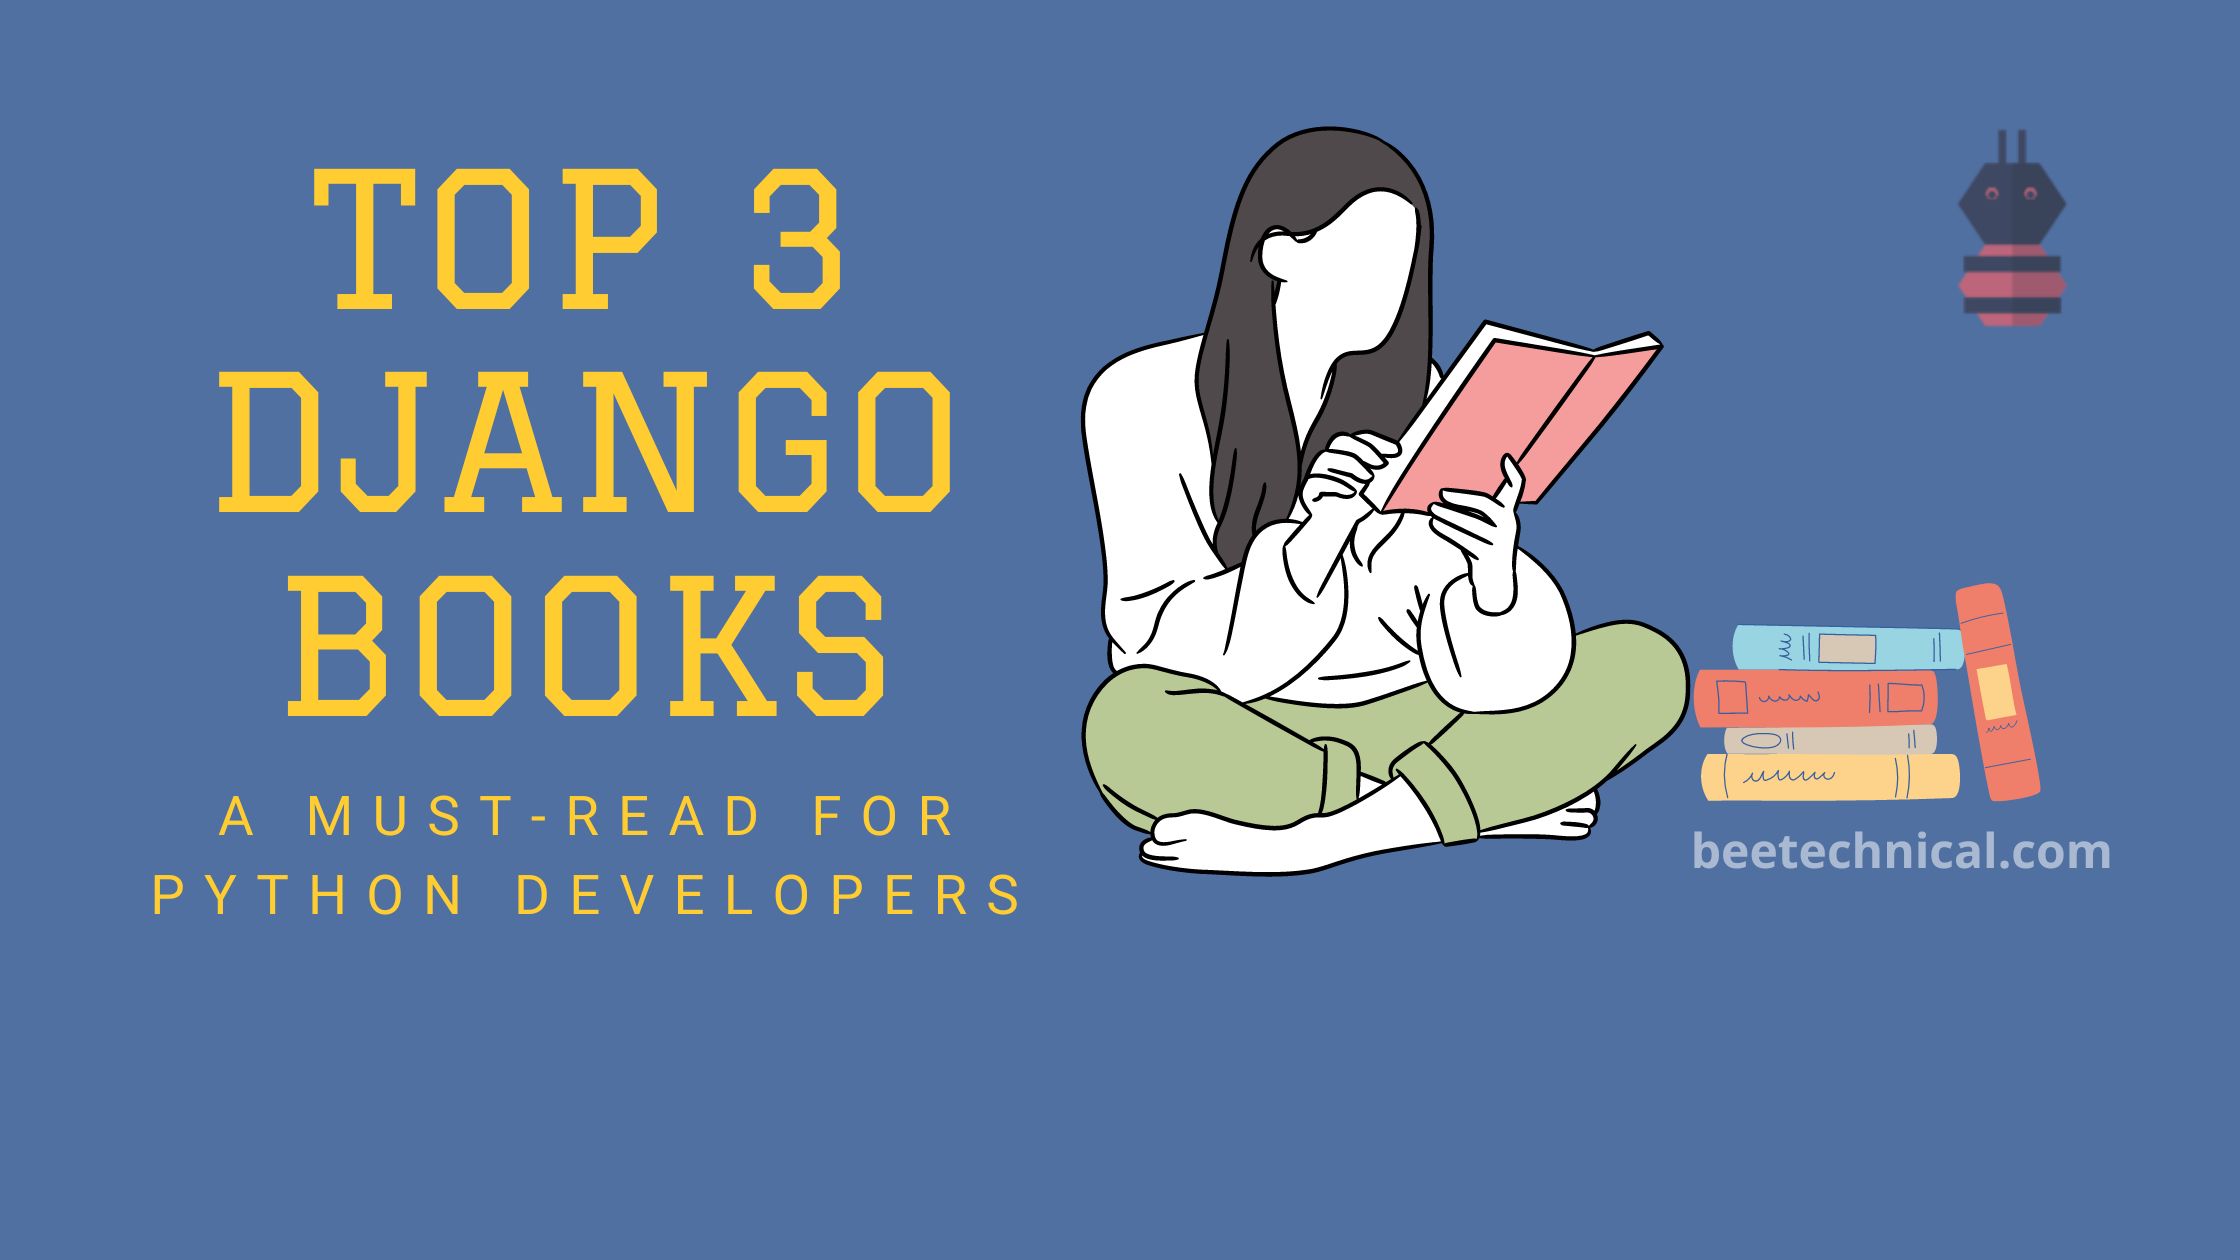 Top 3 Django books